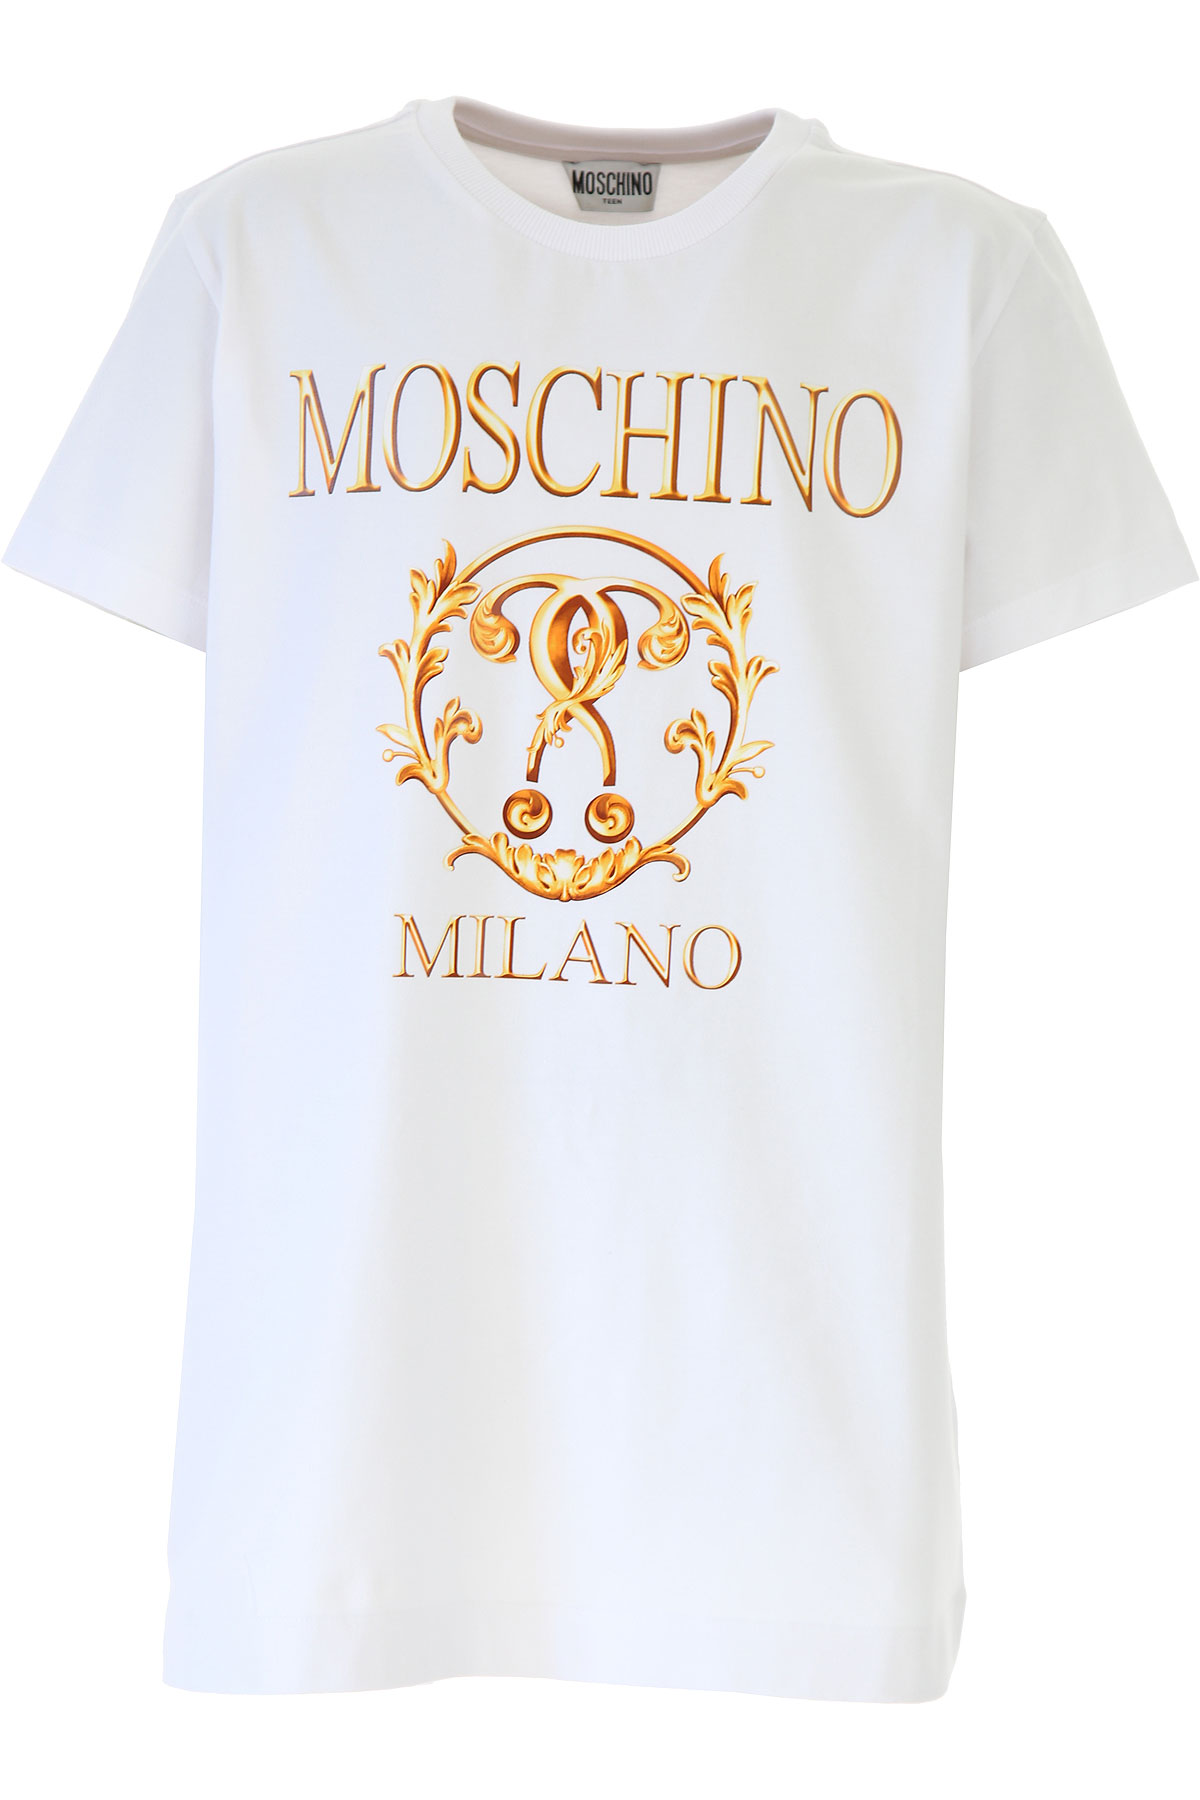 Moschino Kinder T-Shirt für Jungen Günstig im Sale, Weiss, Baumwolle, 2017, 10Y 12Y 14Y 4Y 8Y